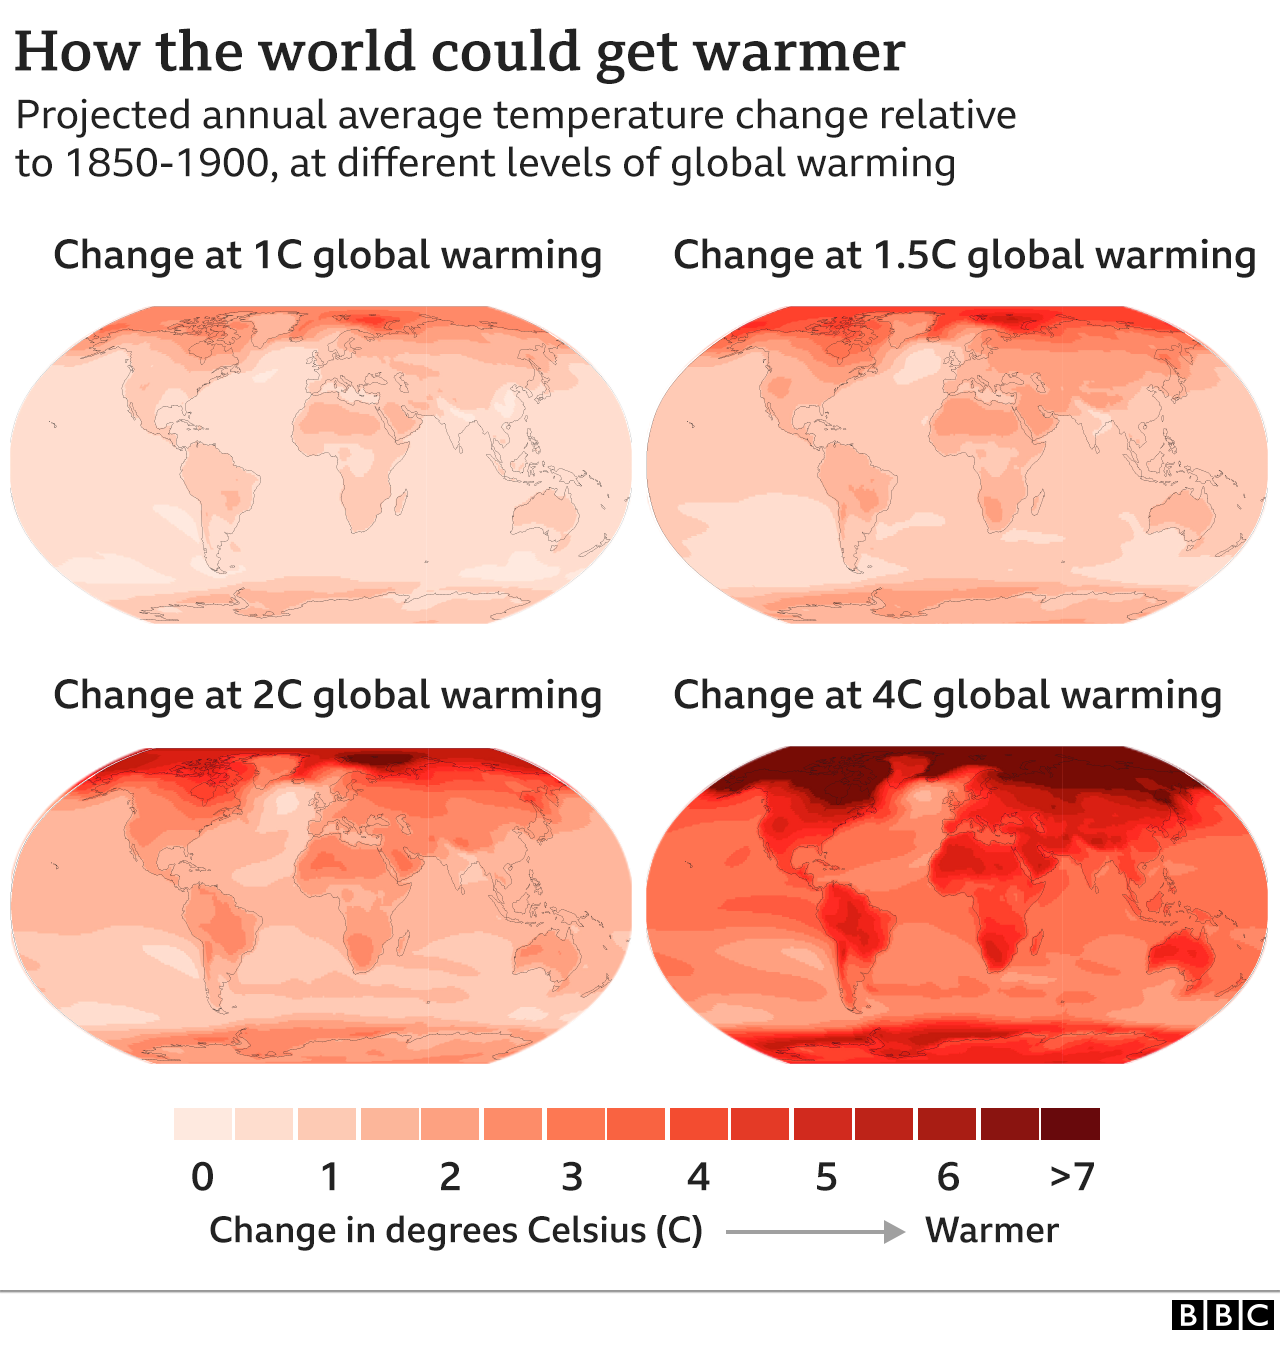 Die Infografik zeigt, wie sich verschiedene Teile der Welt bei einer Erwärmung von 1C, 1,5C, 2C und 4C erwärmen werden. Die Arktis und die Hochgebirgsregionen erwärmen sich viel stärker als der globale Durchschnitt.